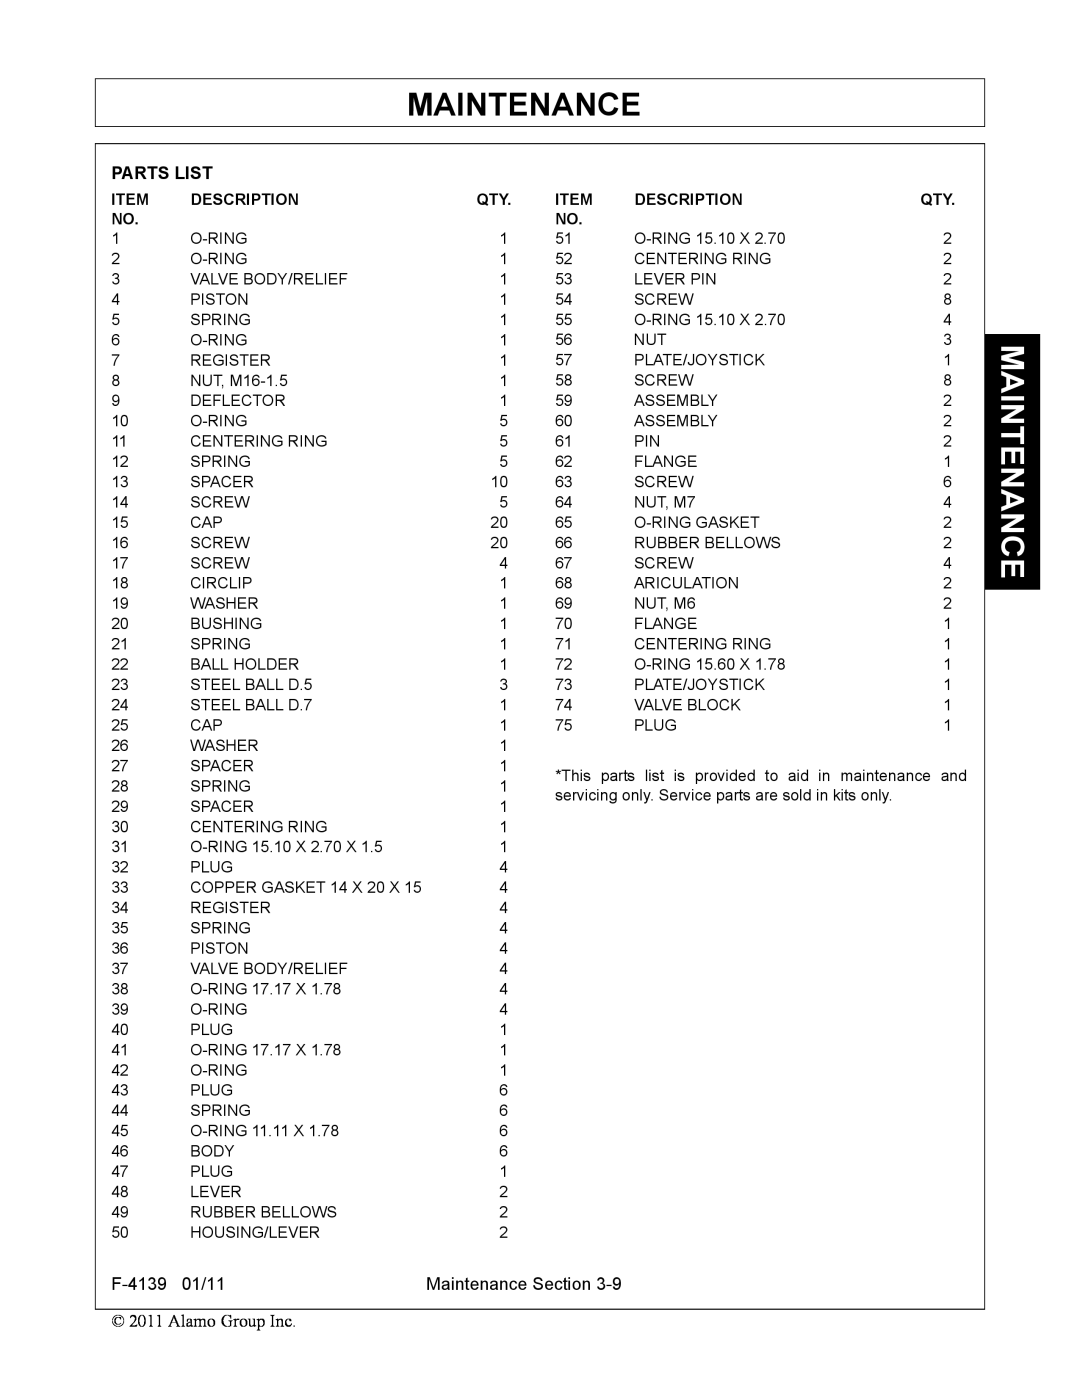 Servis-Rhino 60C manual Maintenance, Parts List, Alamo Group Inc, Item, Description 